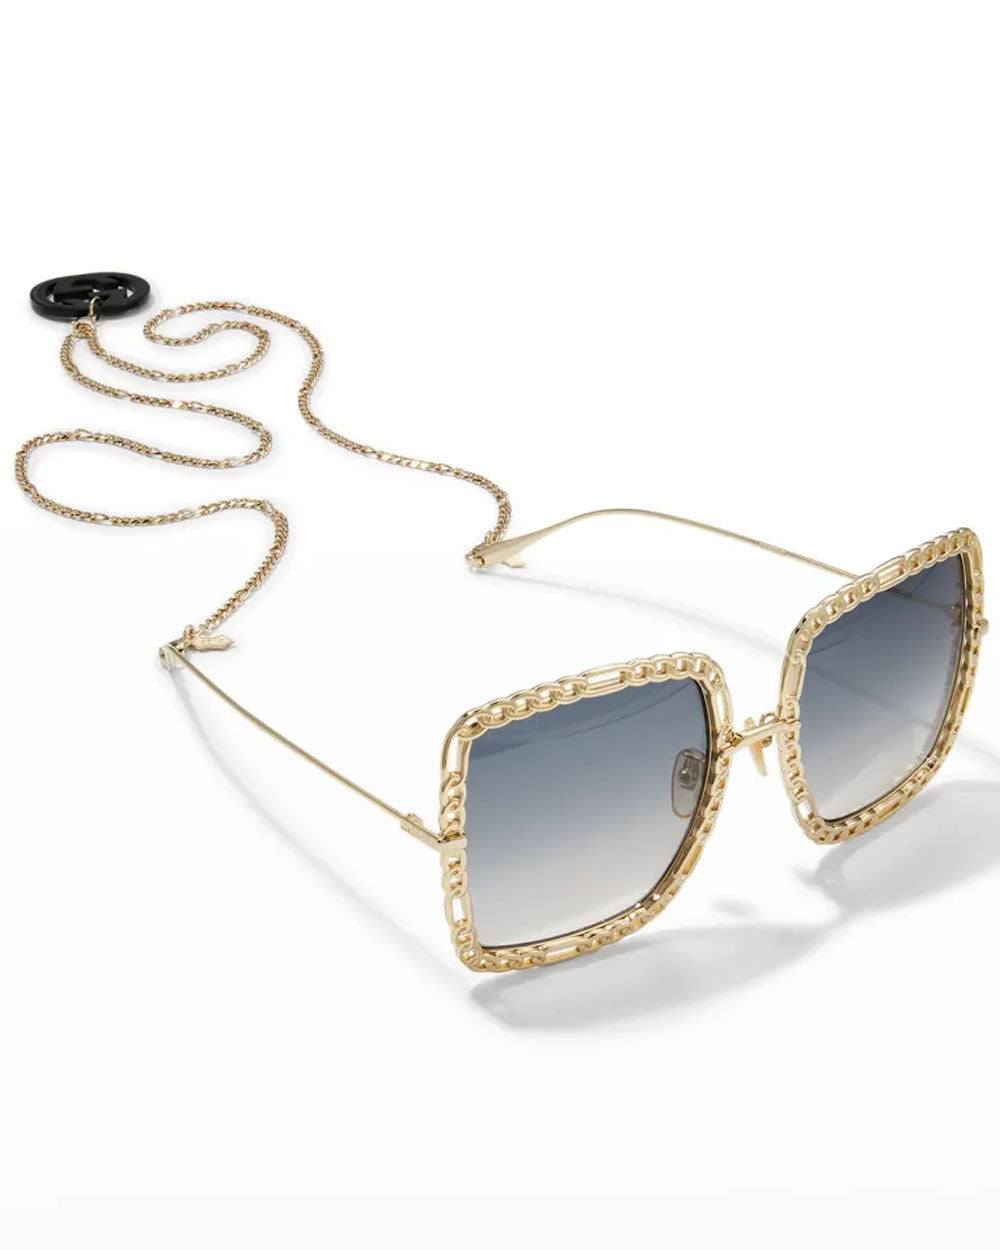 Square Metal Sunglasses w/ Chain Strap